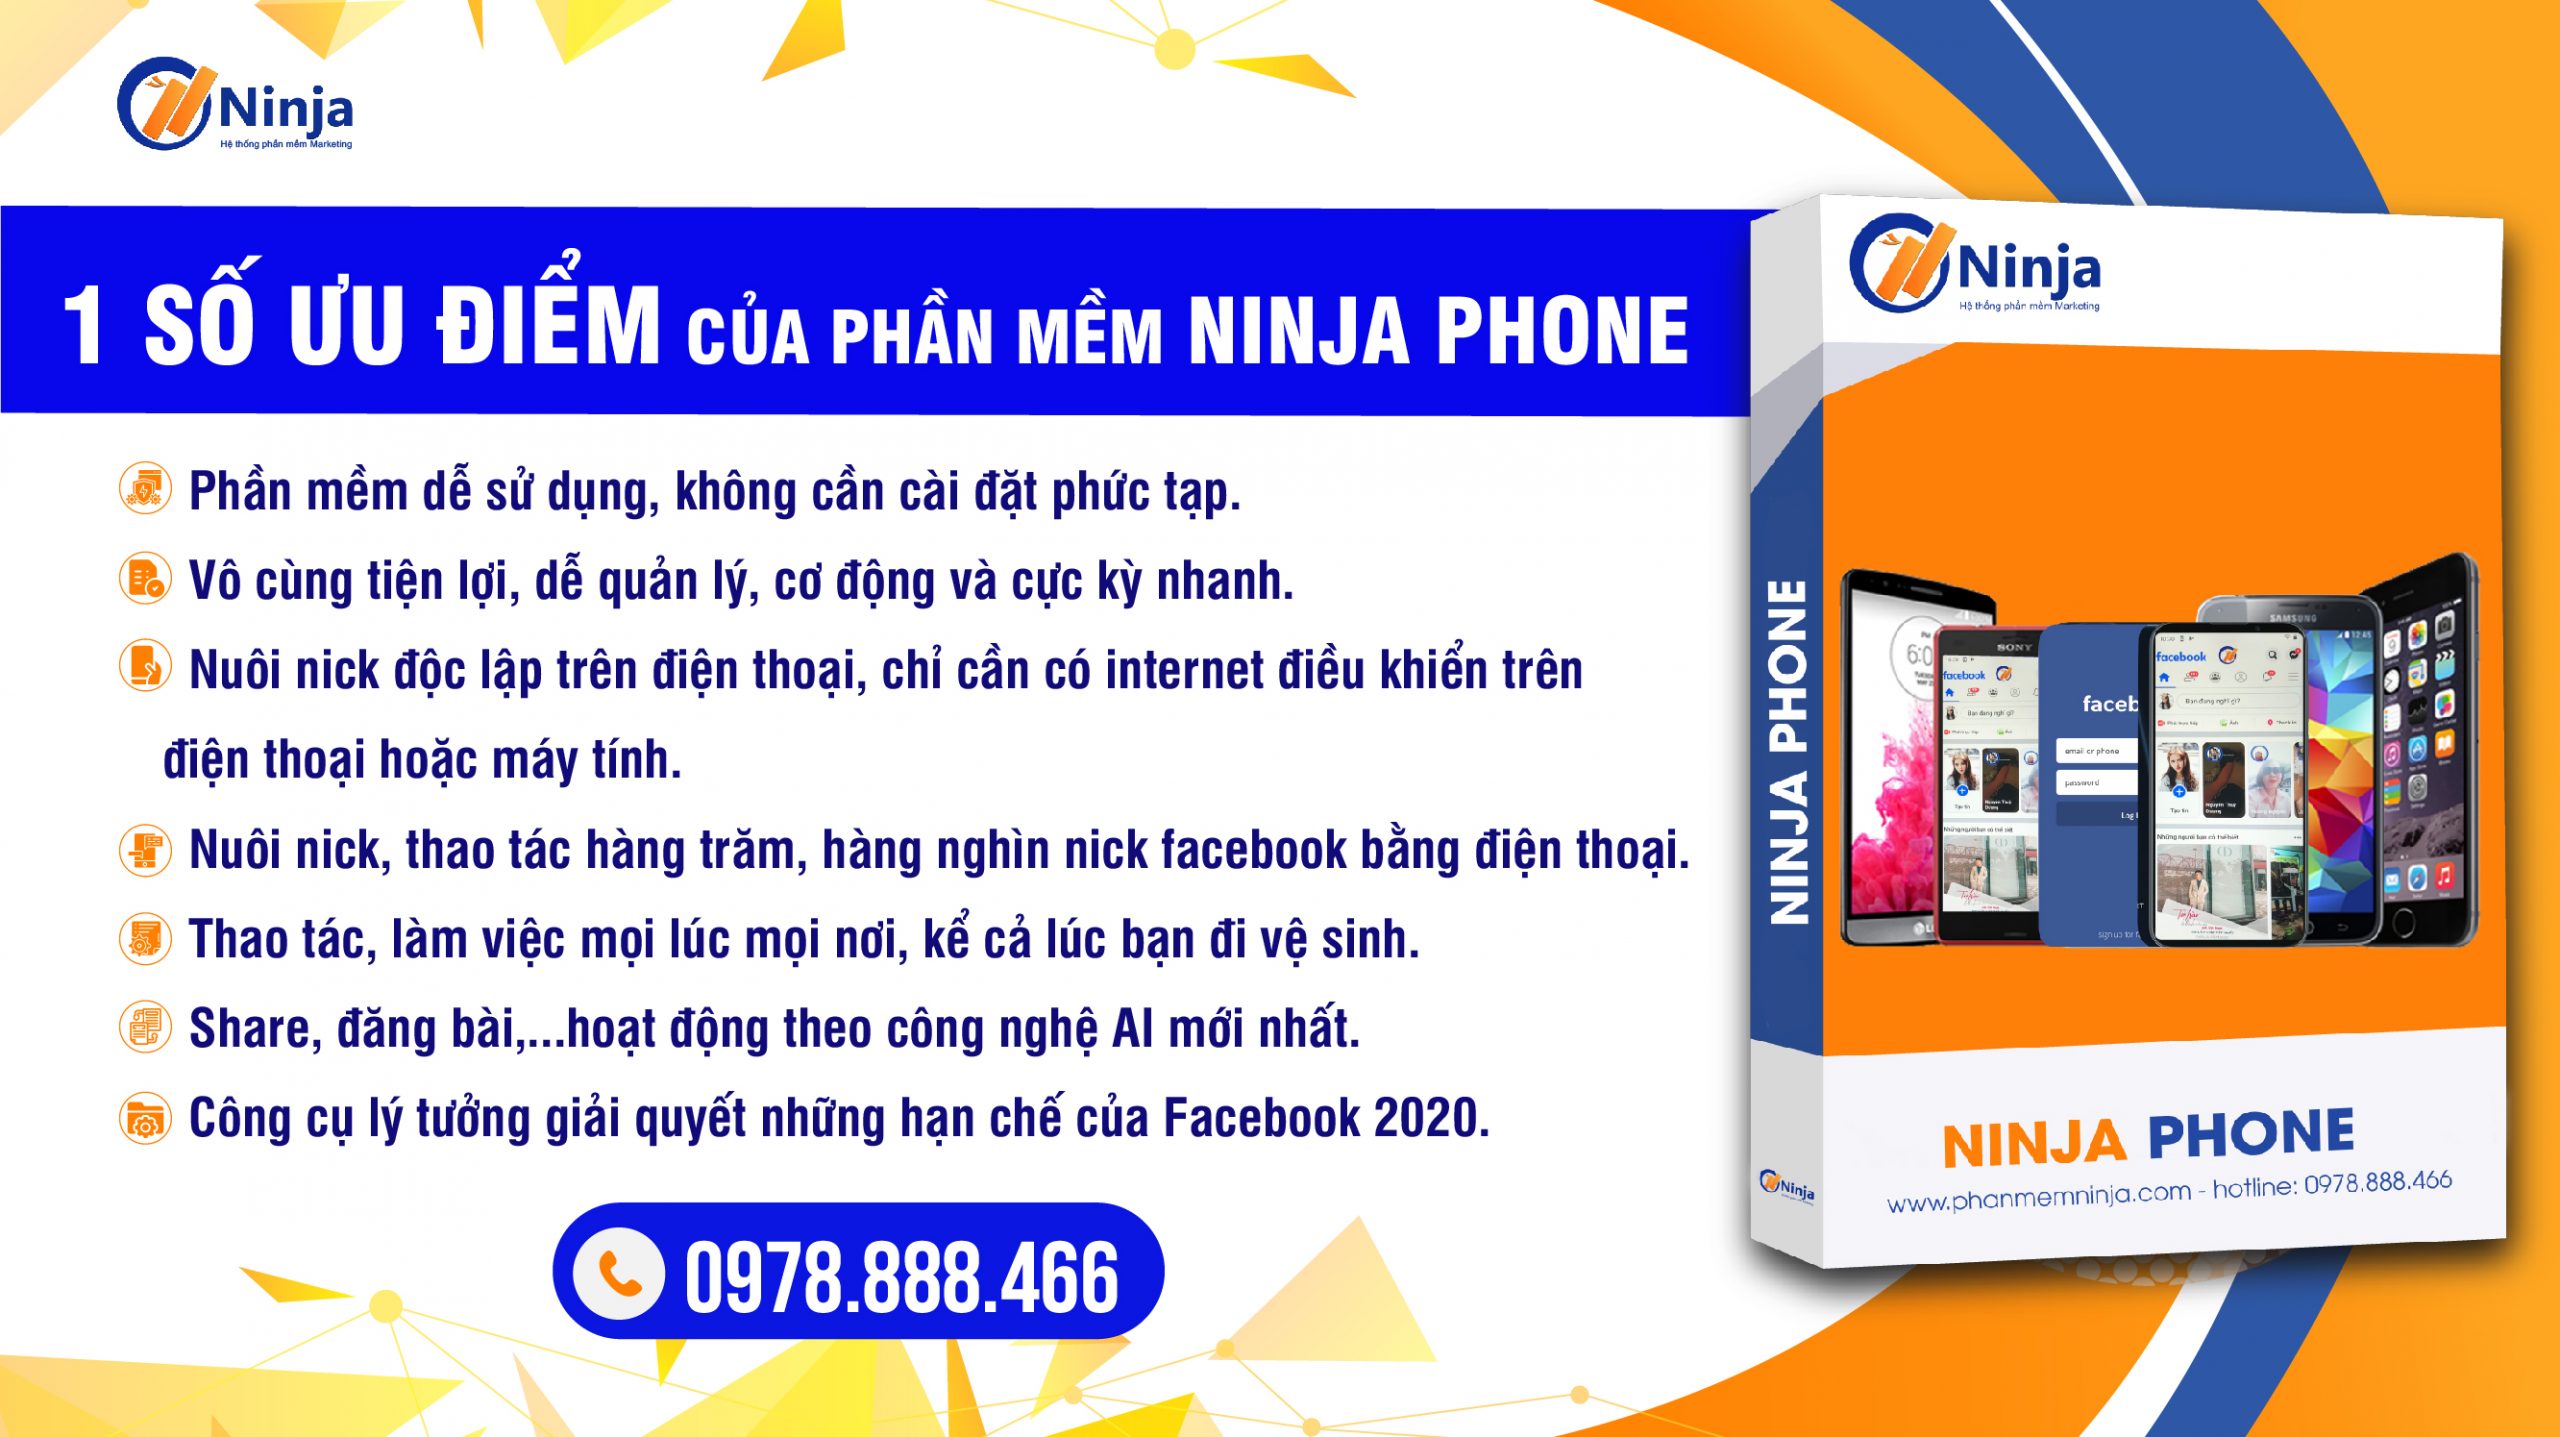 ninja-phone-phan-mem-nuoi-nick-dien-thoai-cuc-ky-hieu-qua